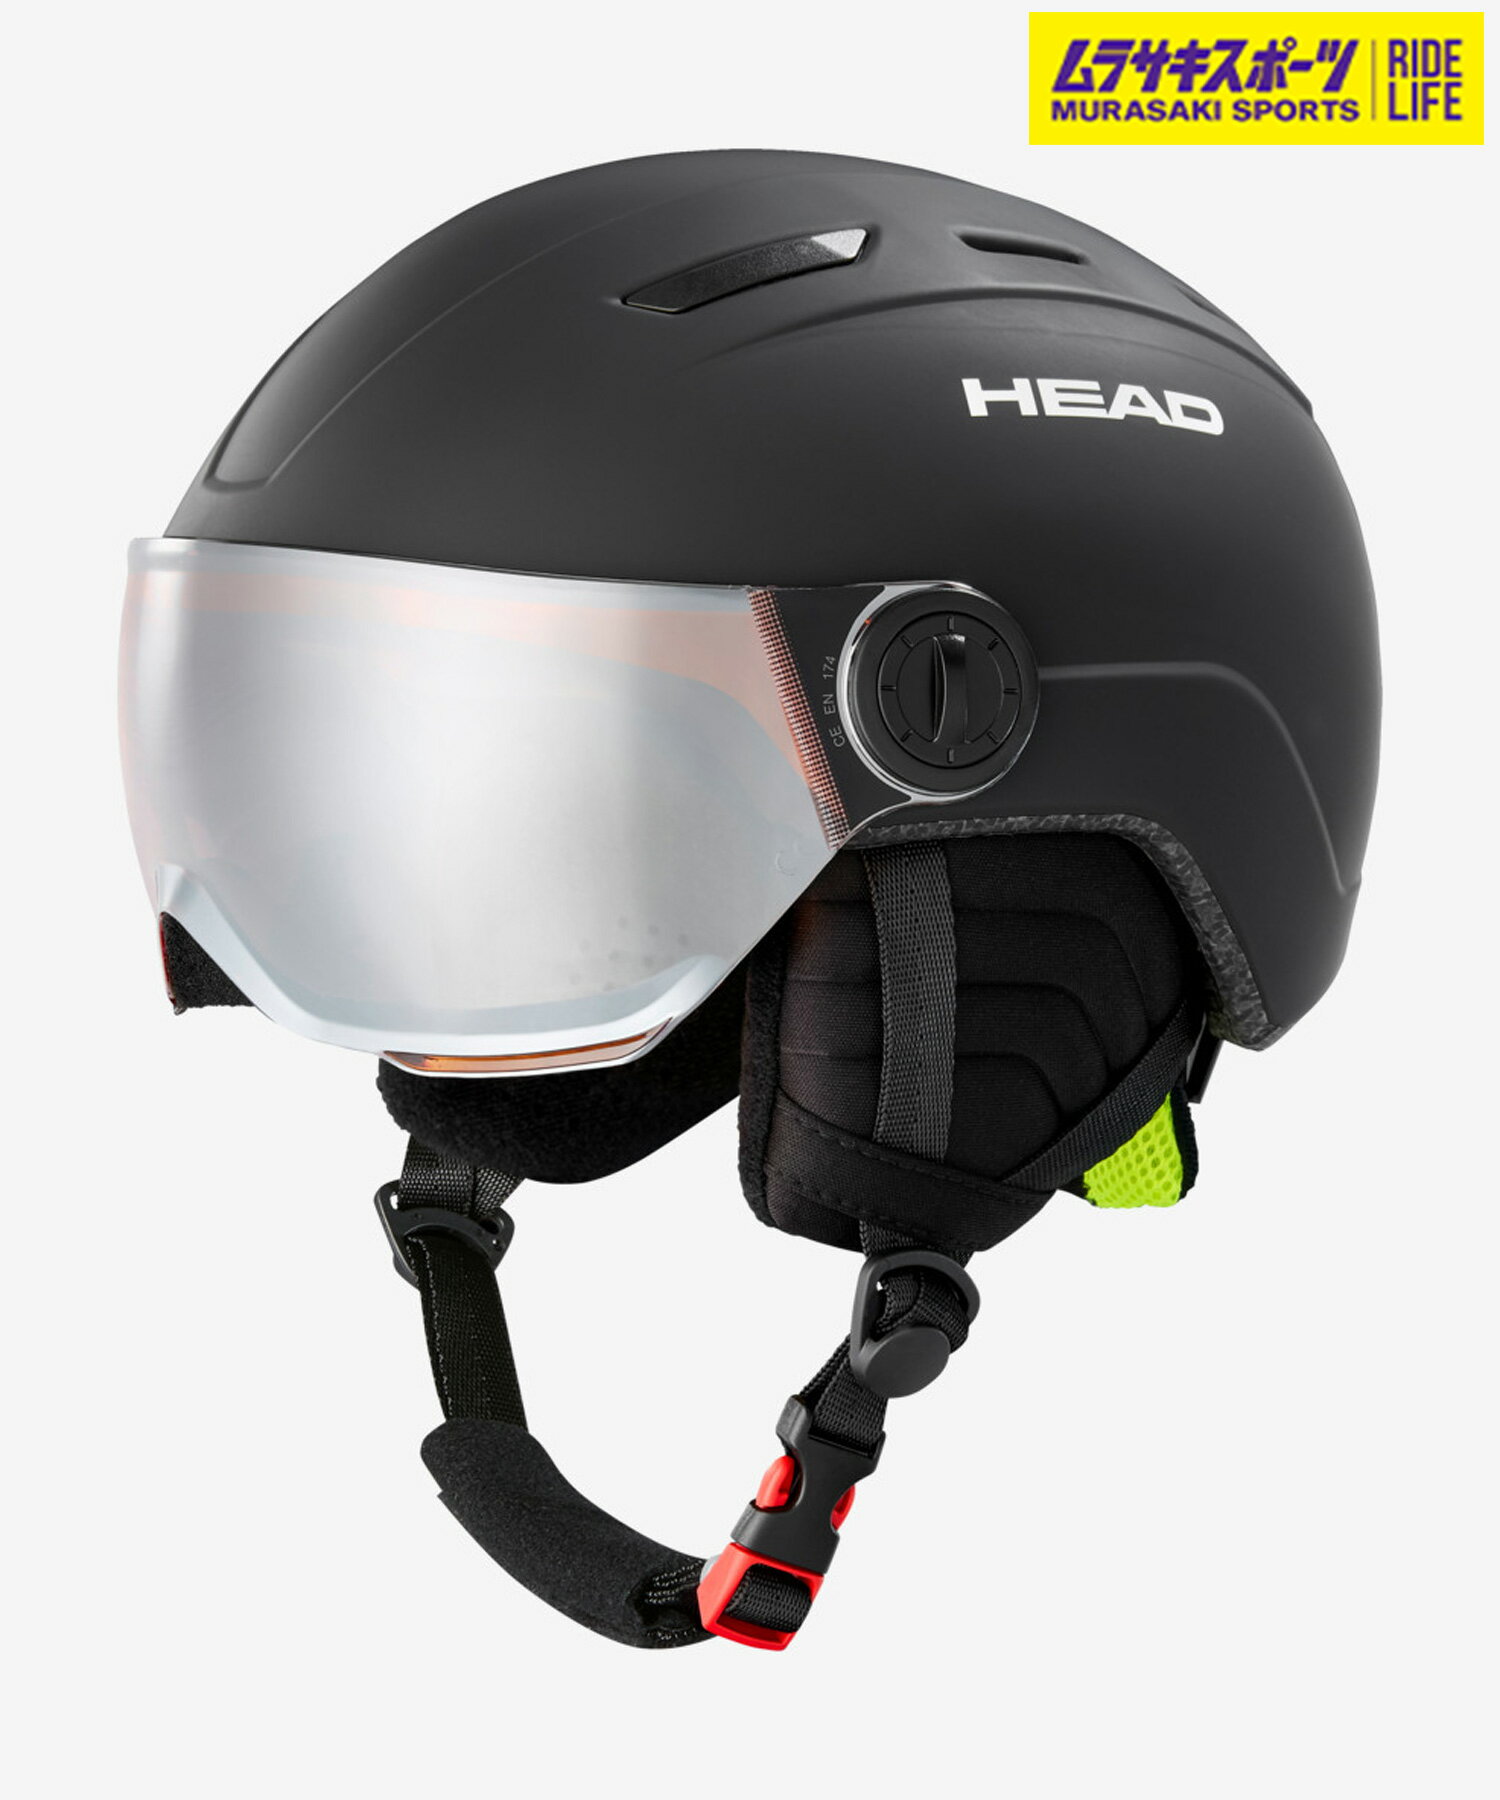 スノーボード ヘルメット キッズ HEAD ヘッド MOJO VISOR 23-37モデル ムラサキスポーツ KK K23